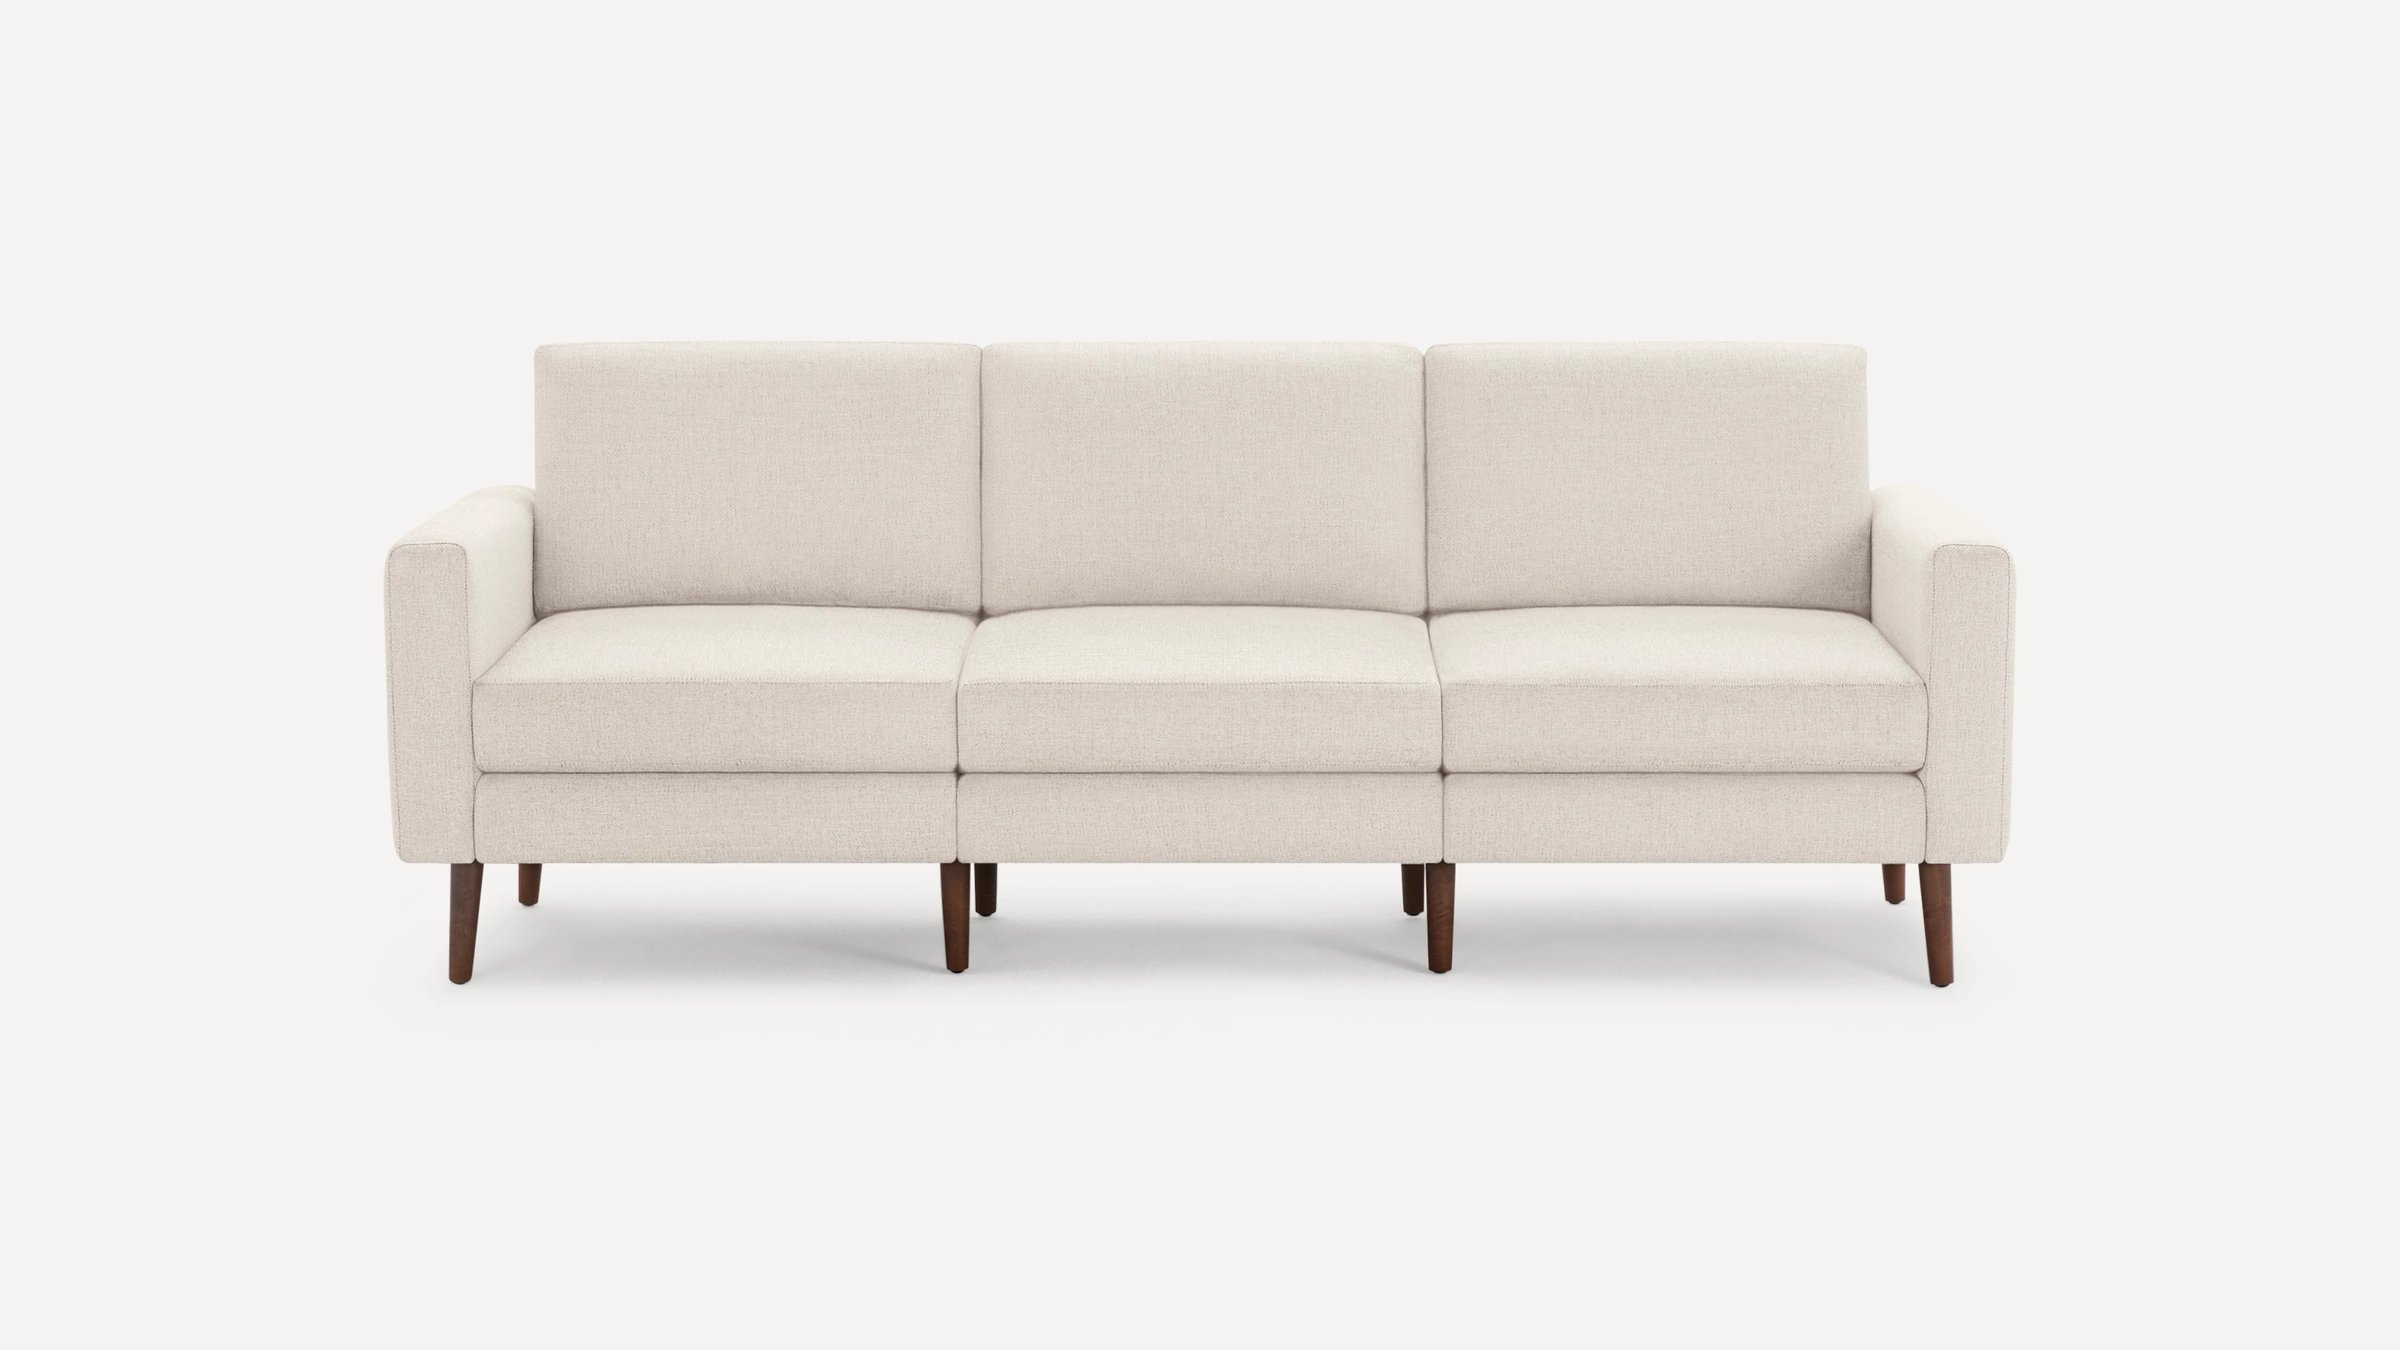 Block Nomad Sofa - Ivory, Block Arm, Walnut Legs, Flip Back Cushions - Image 0